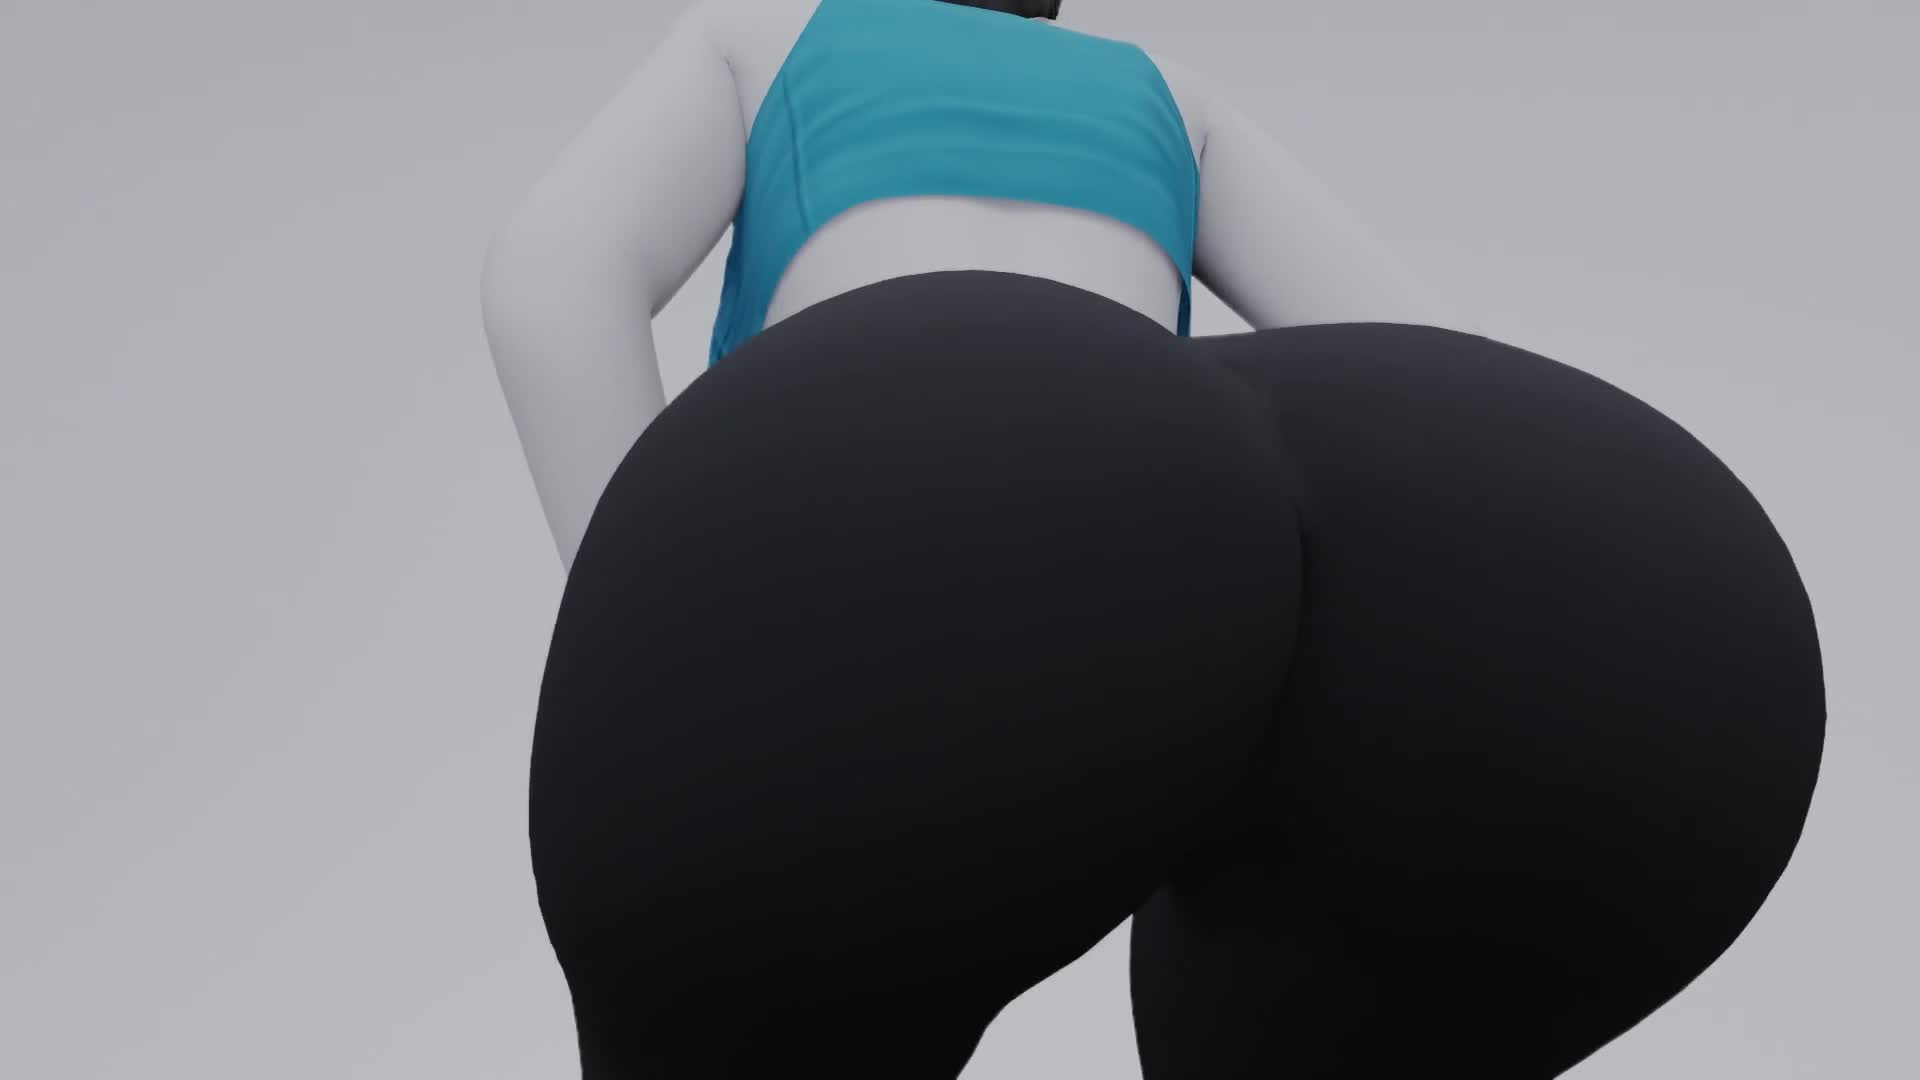 Wii Fit Anal Porn - Wii Fit Wii Fit Trainer Big Ass Video - Lewd.ninja